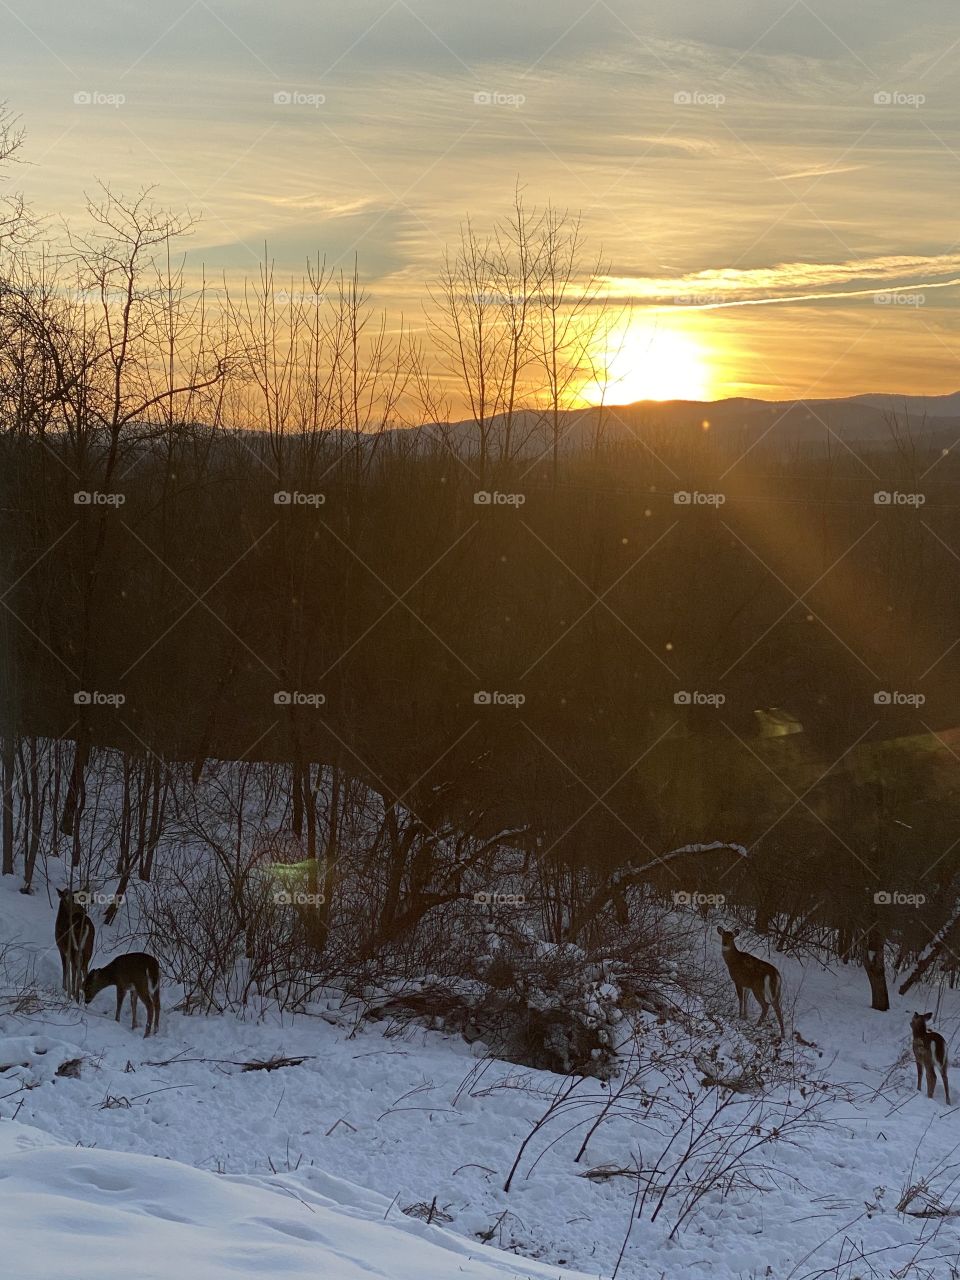 Deer & winter sunset